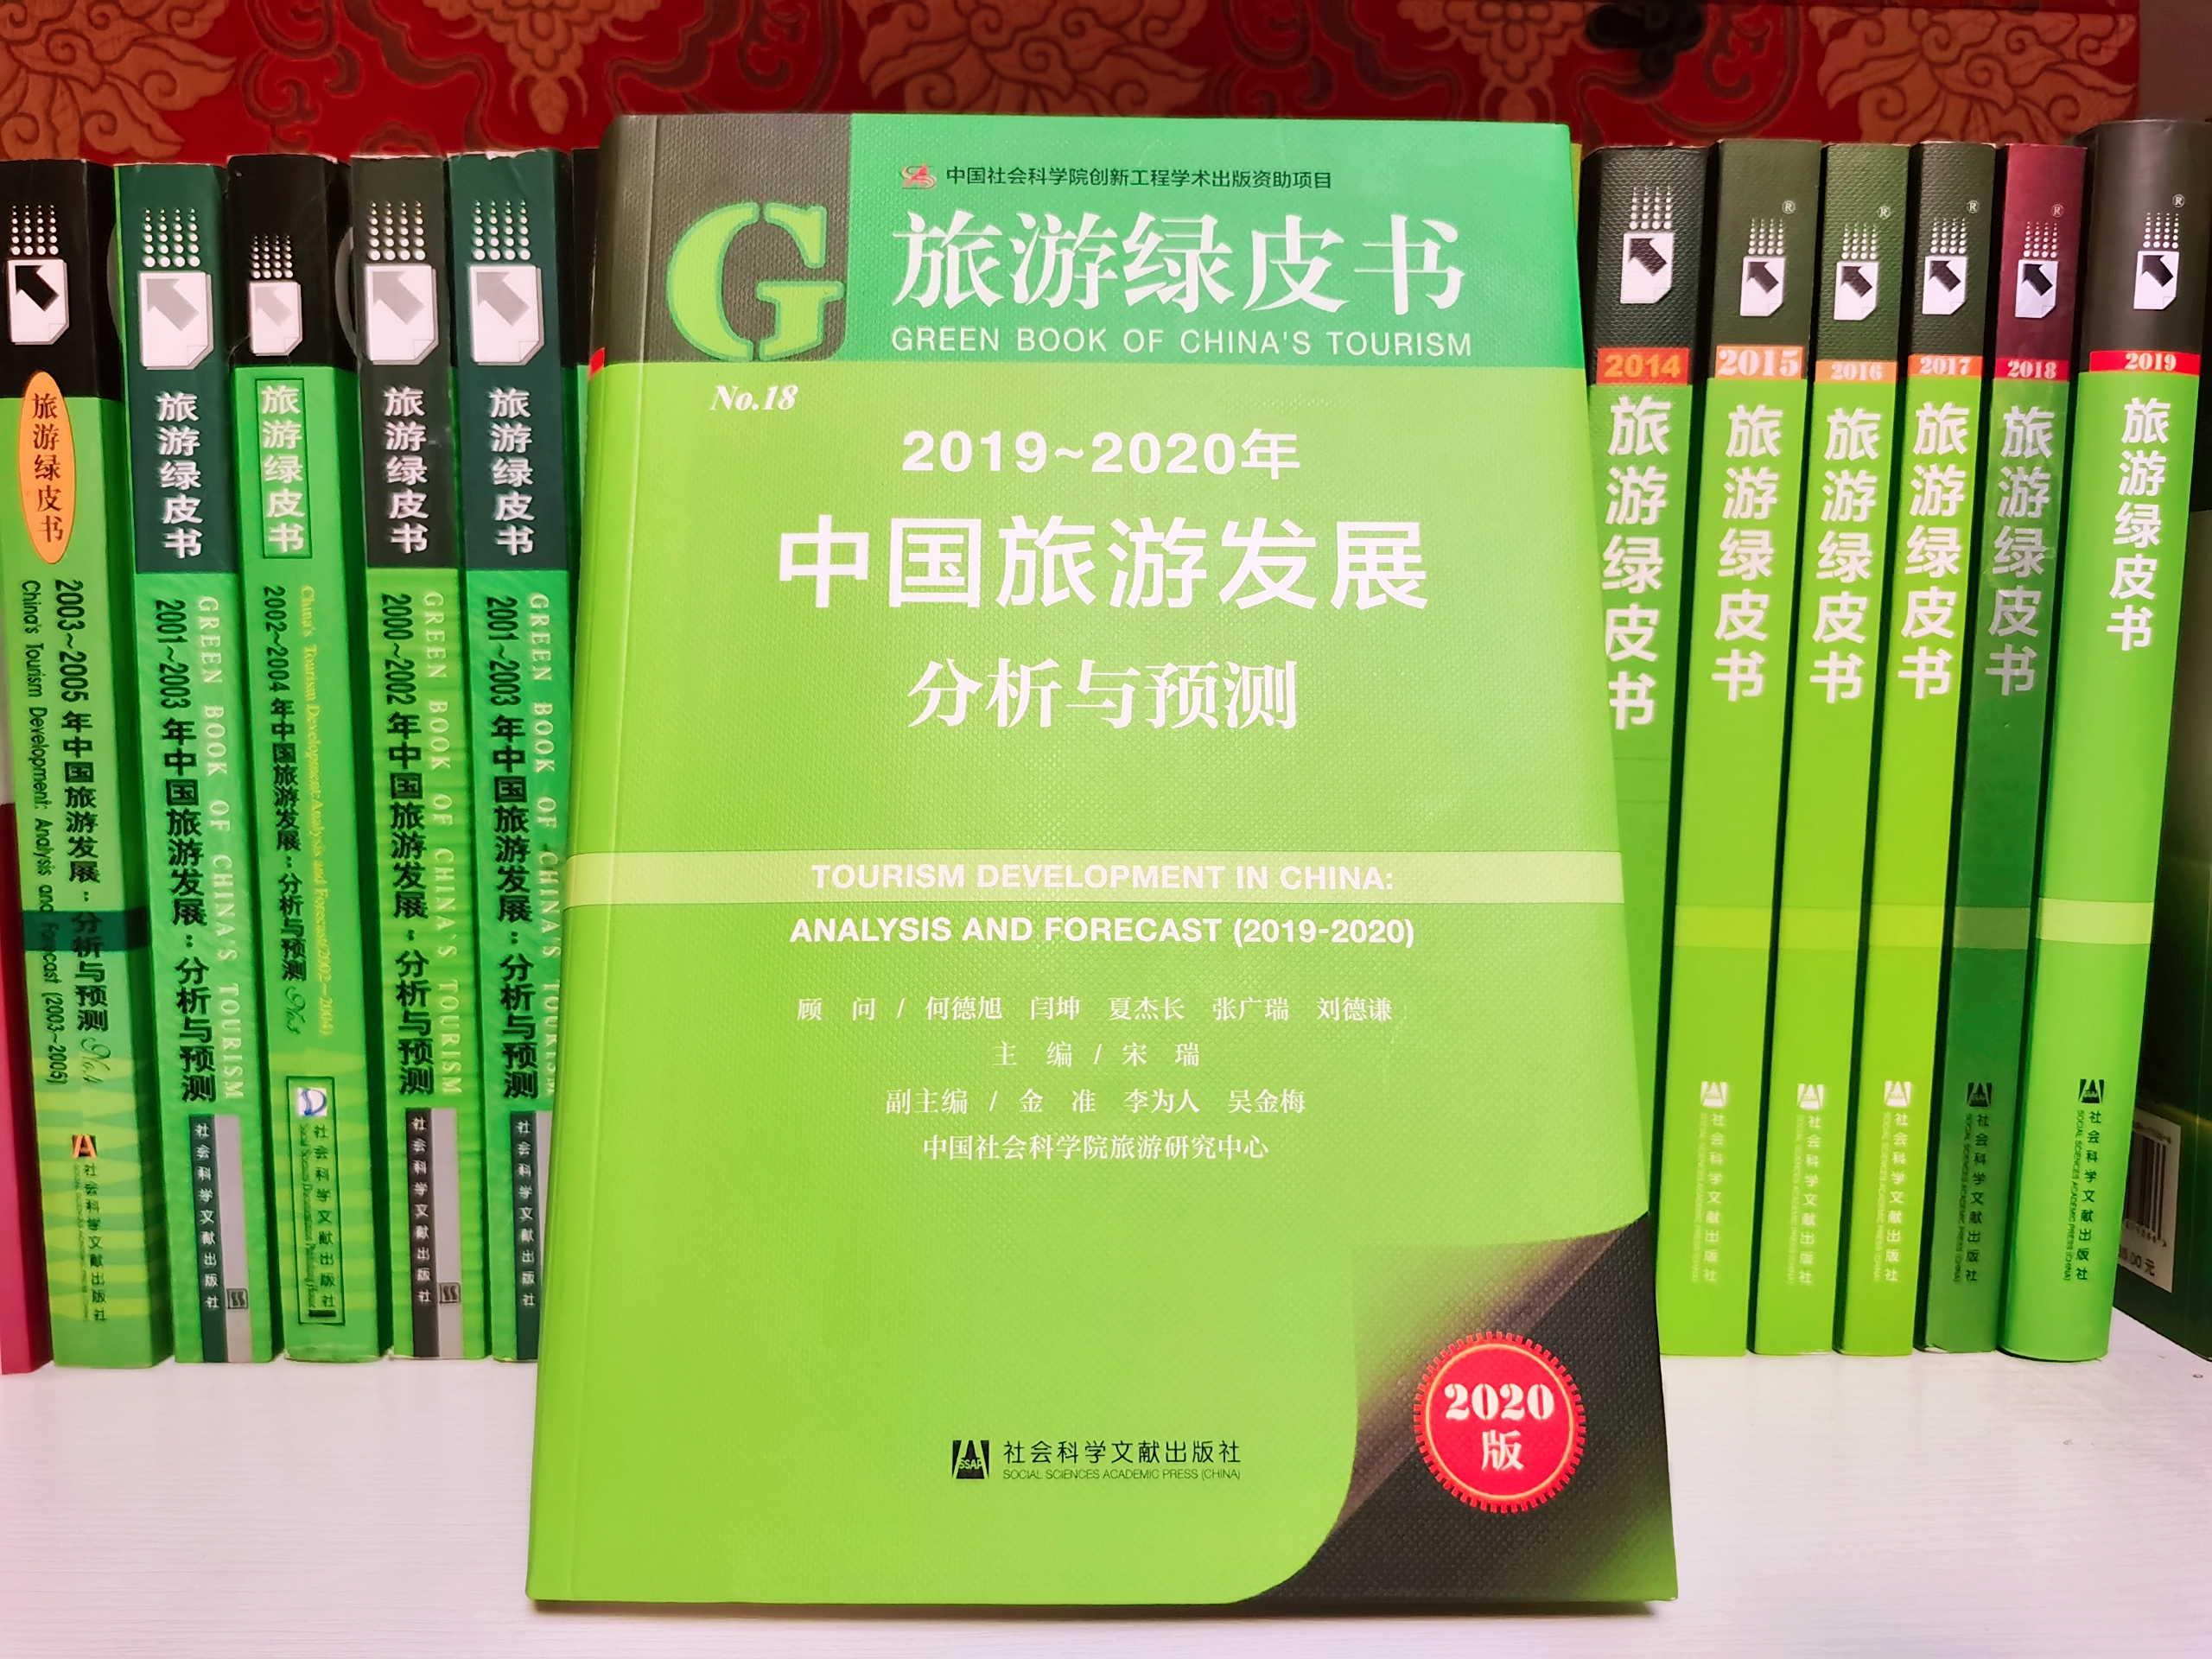 2019~2020《旅游绿皮书》发布 特设专题“疫情下的中国旅游业”